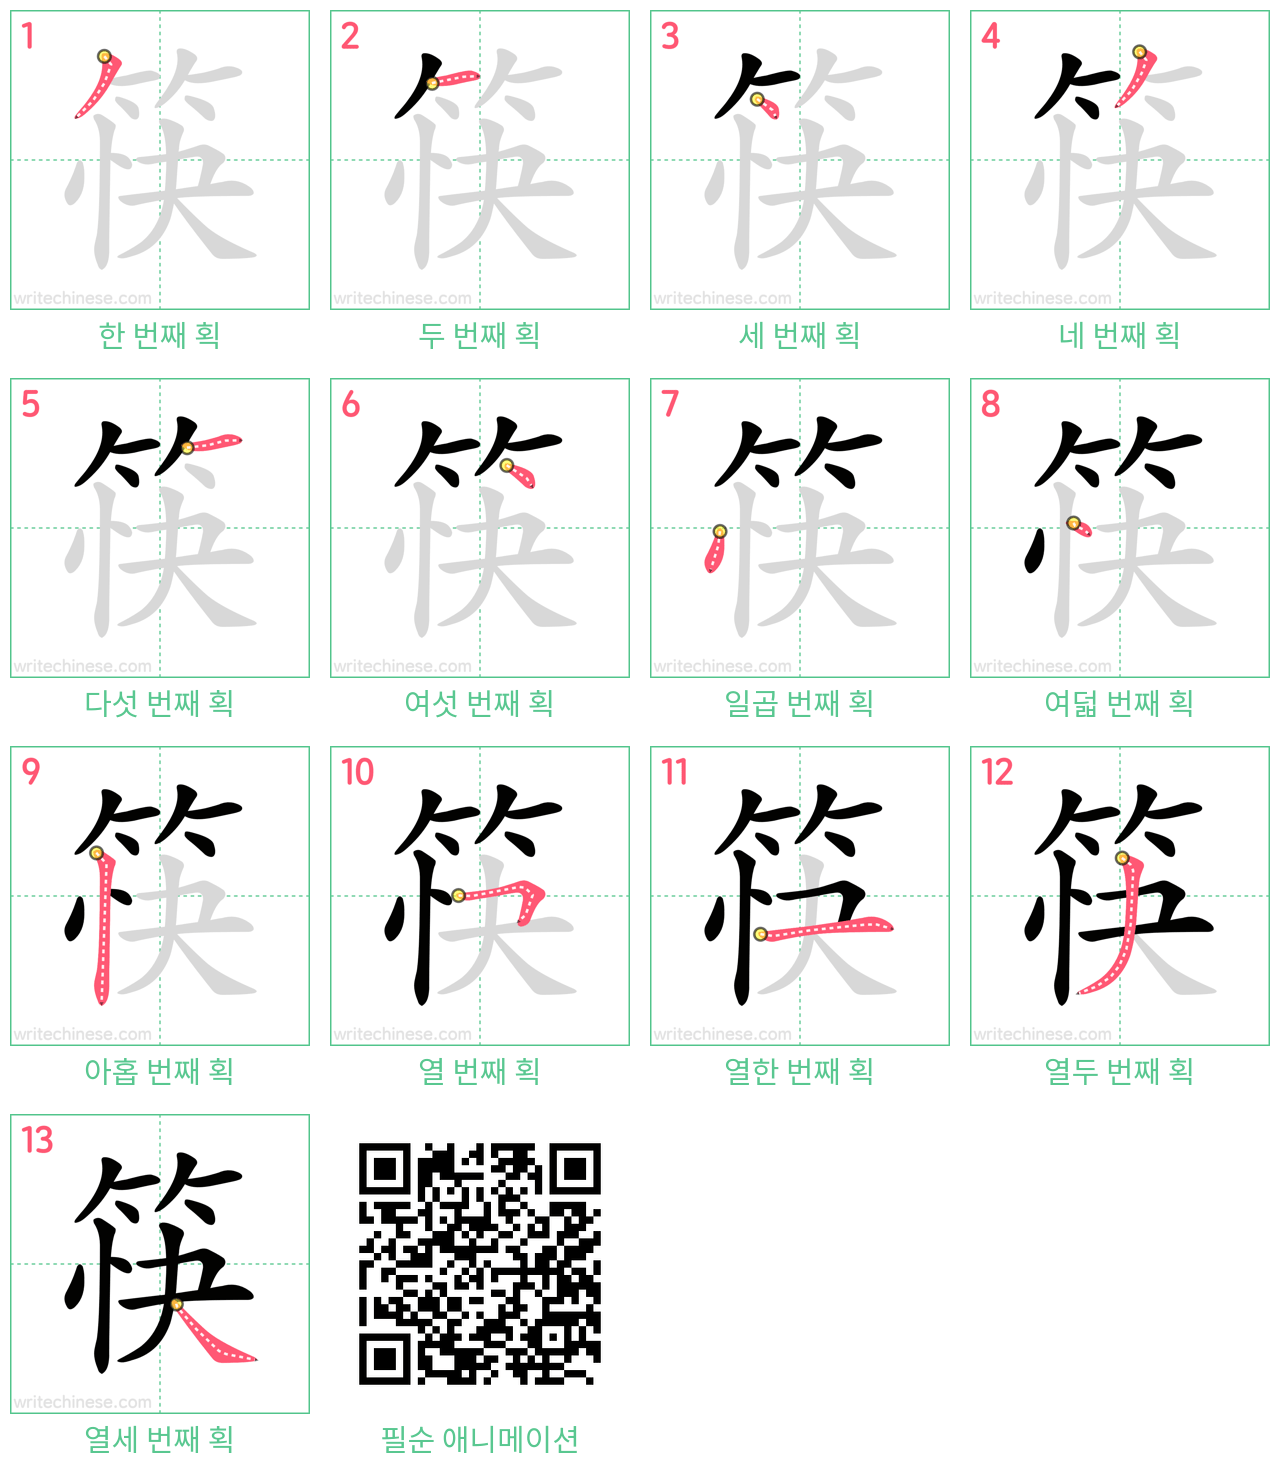 筷 step-by-step stroke order diagrams